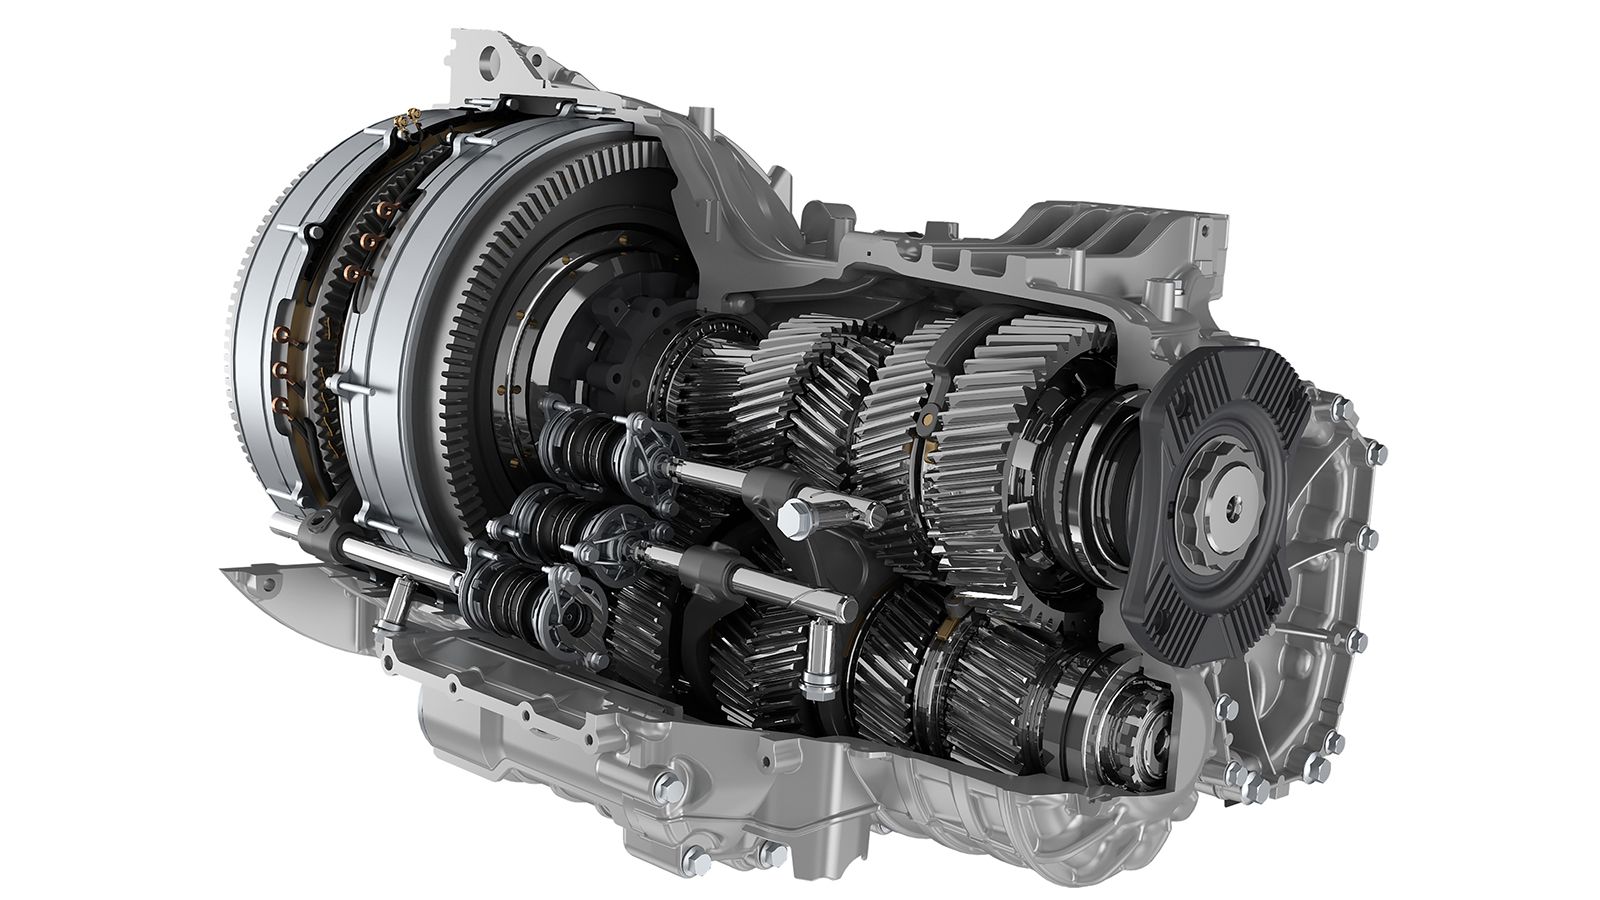 Ο ηλεκτροκινητήρας GE281 αποδίδει 230 kW (308 hp) συνεχούς ισχύος, ενώ εμφανίζει μέγιστη απόδοση 290 kW (389 hp) ισχύος και 2.100 Nm ροπής.